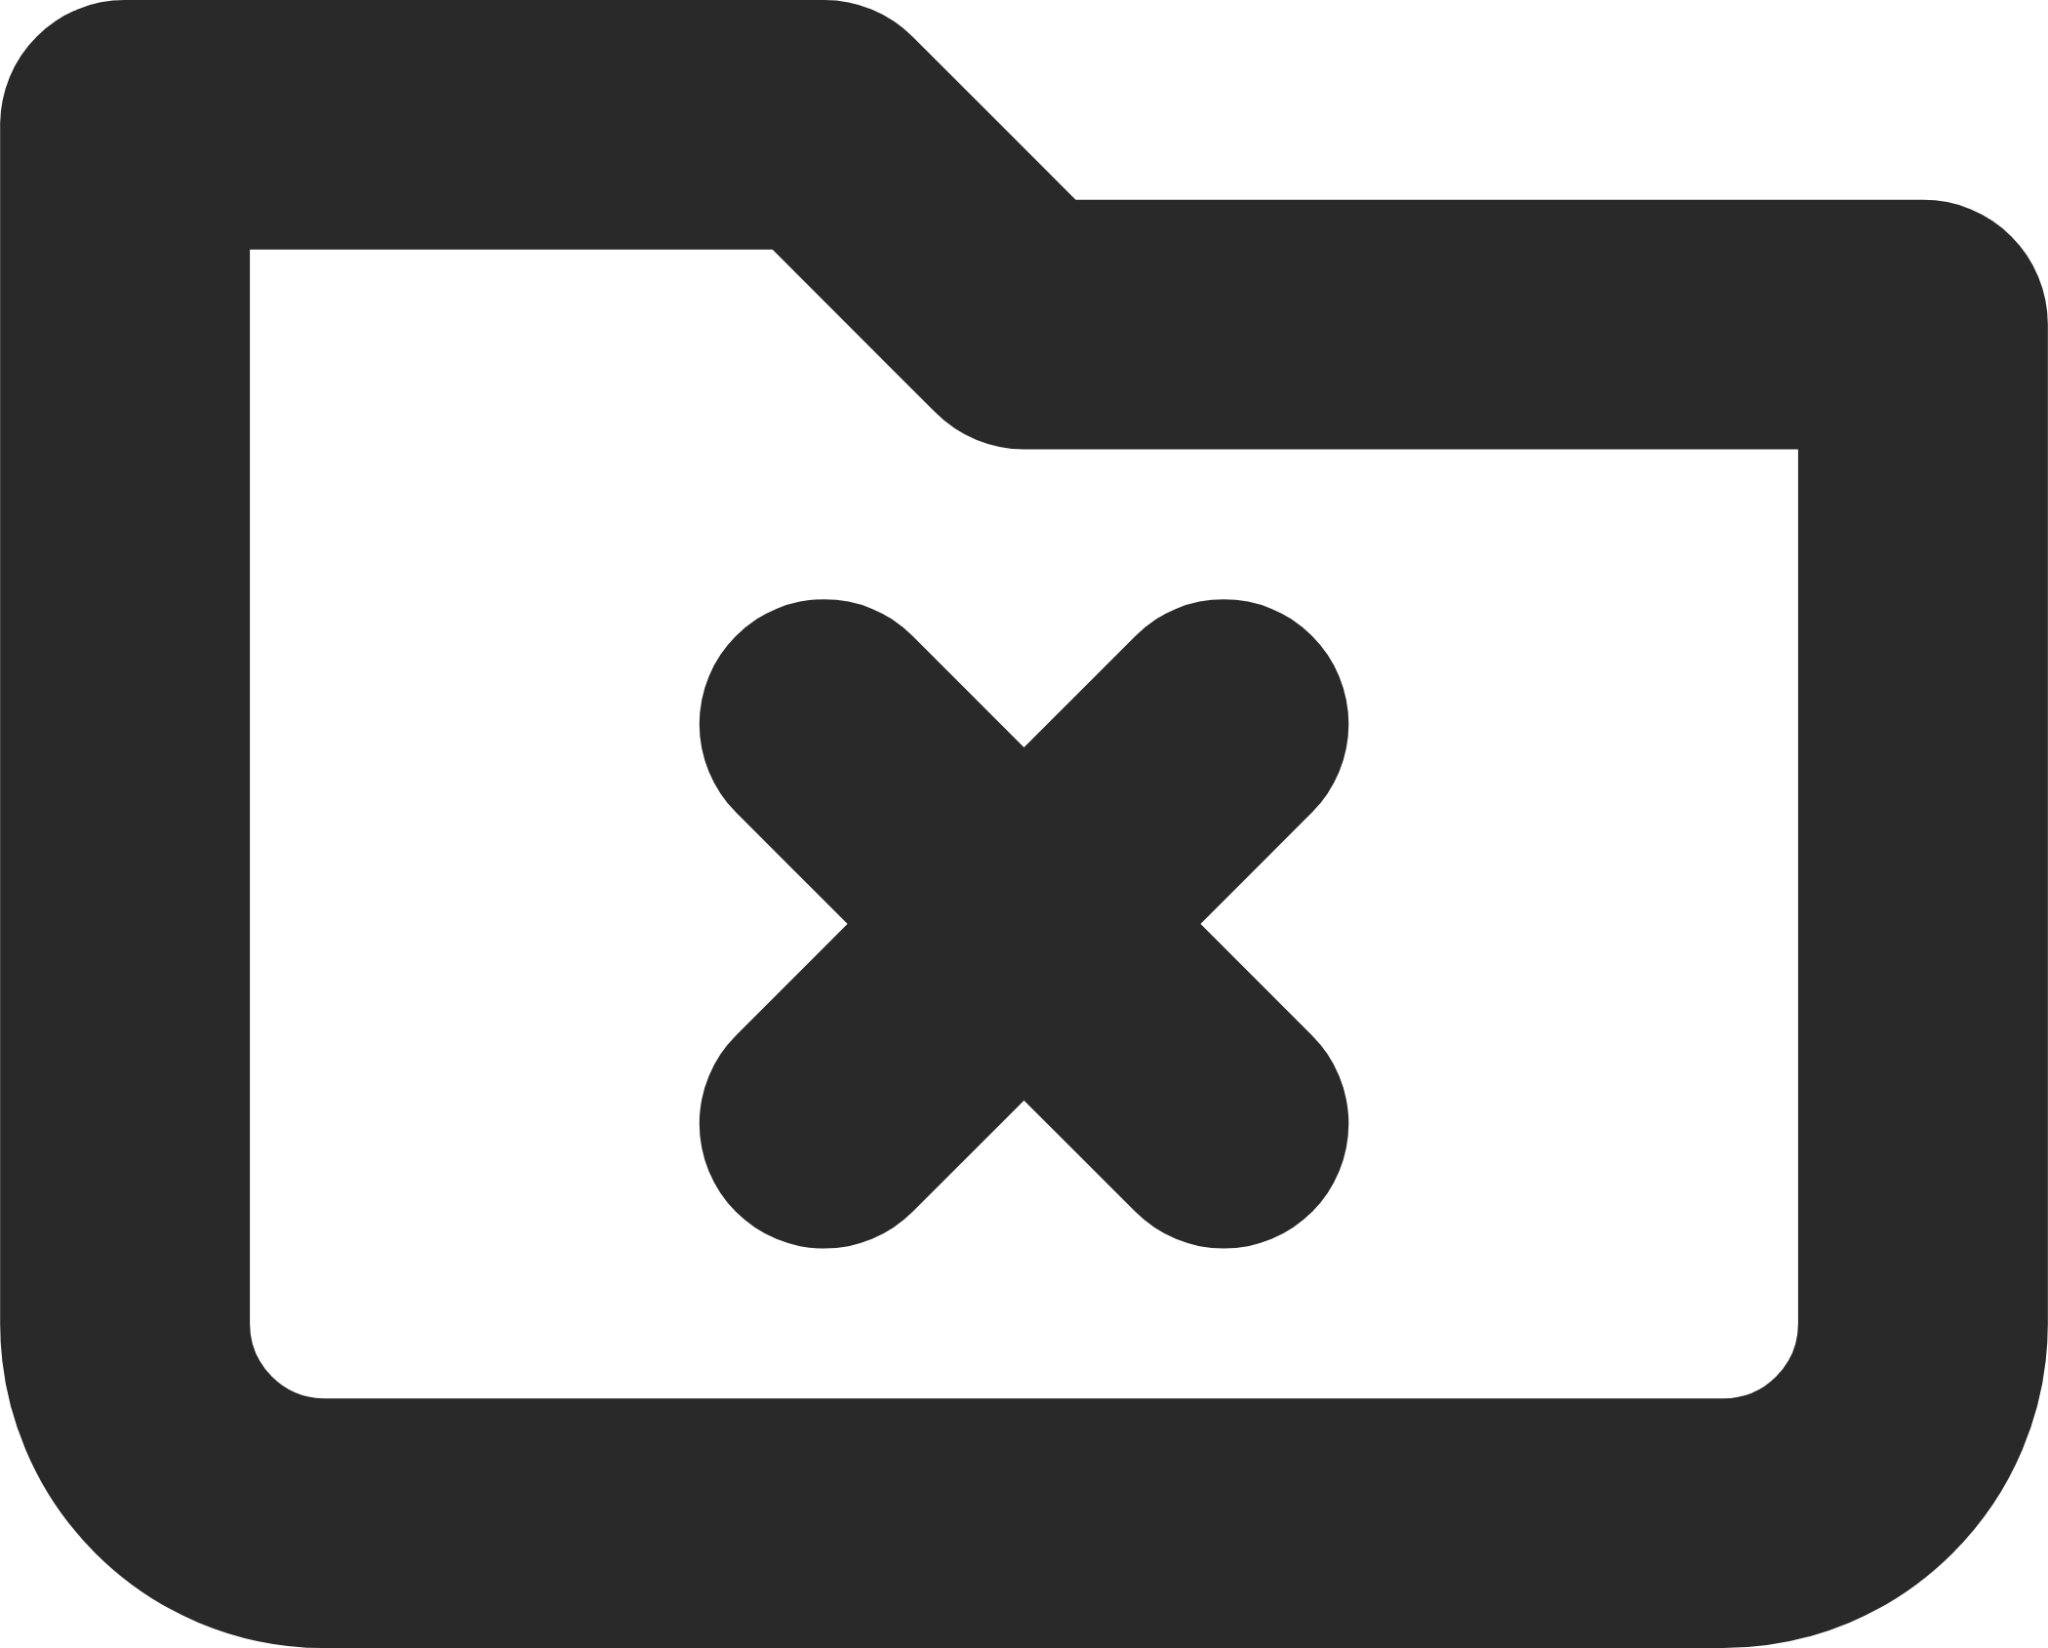 folder close icon